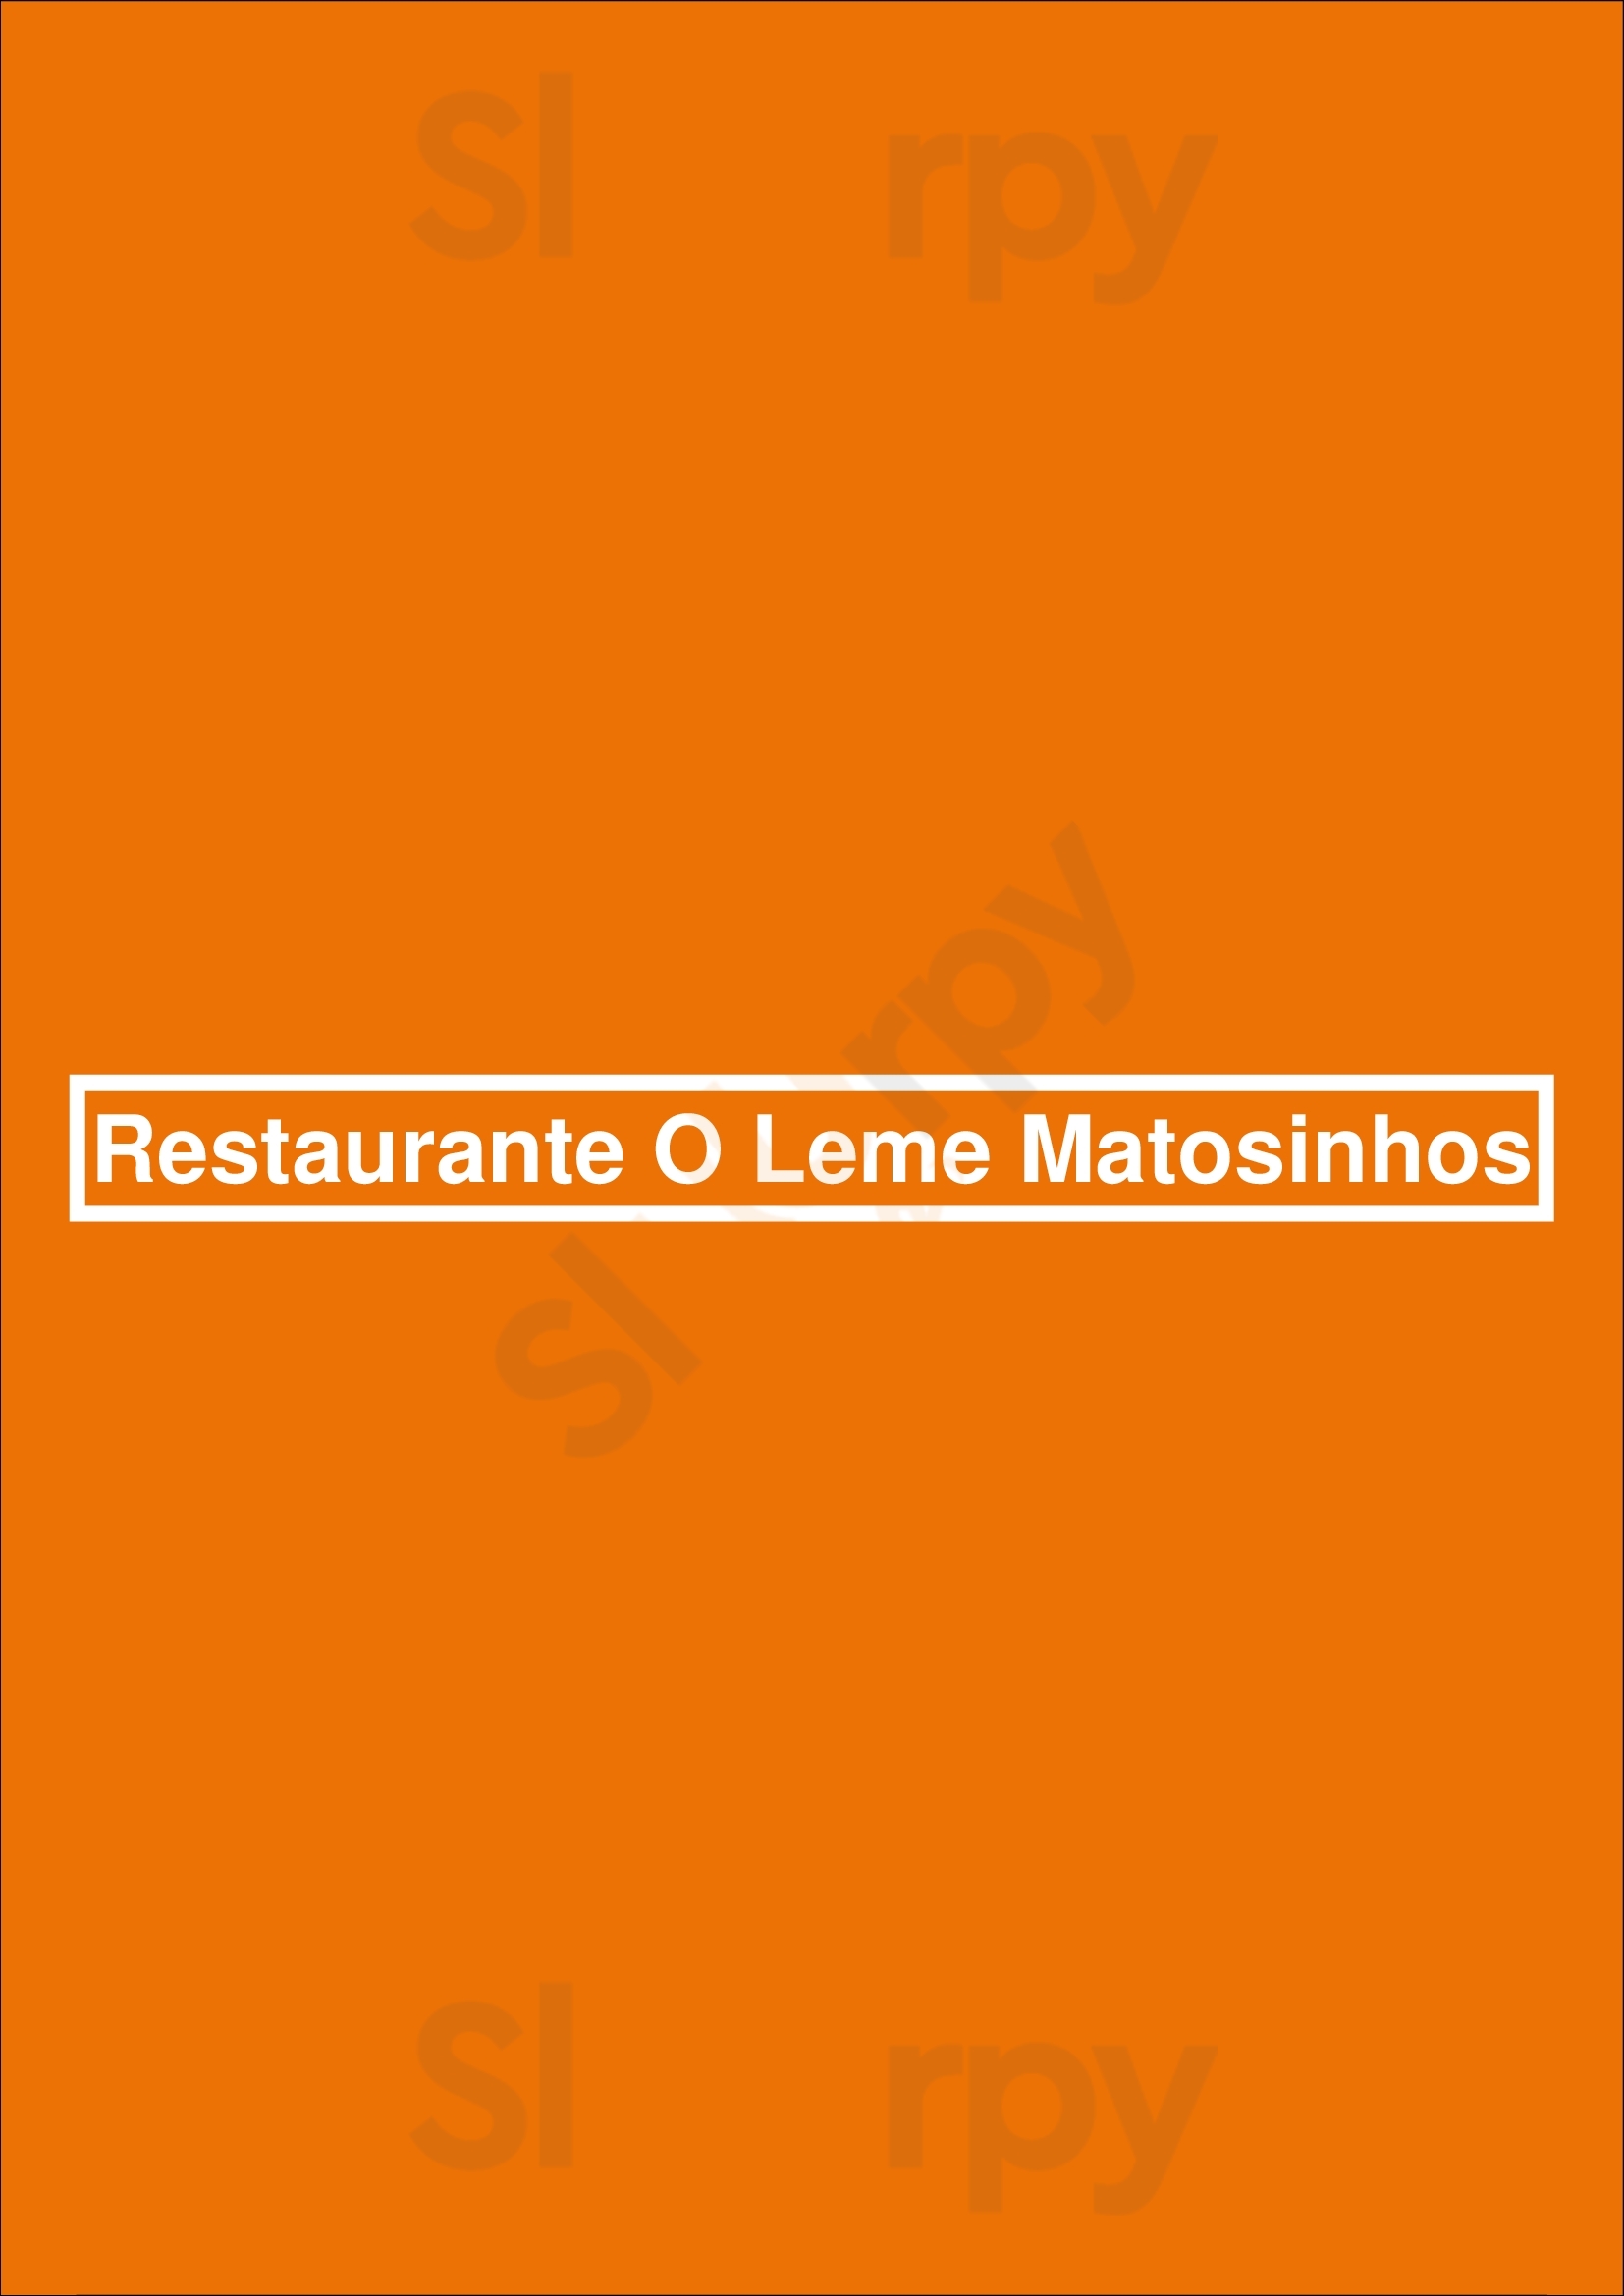 Restaurante O Leme Matosinhos Matosinhos Menu - 1